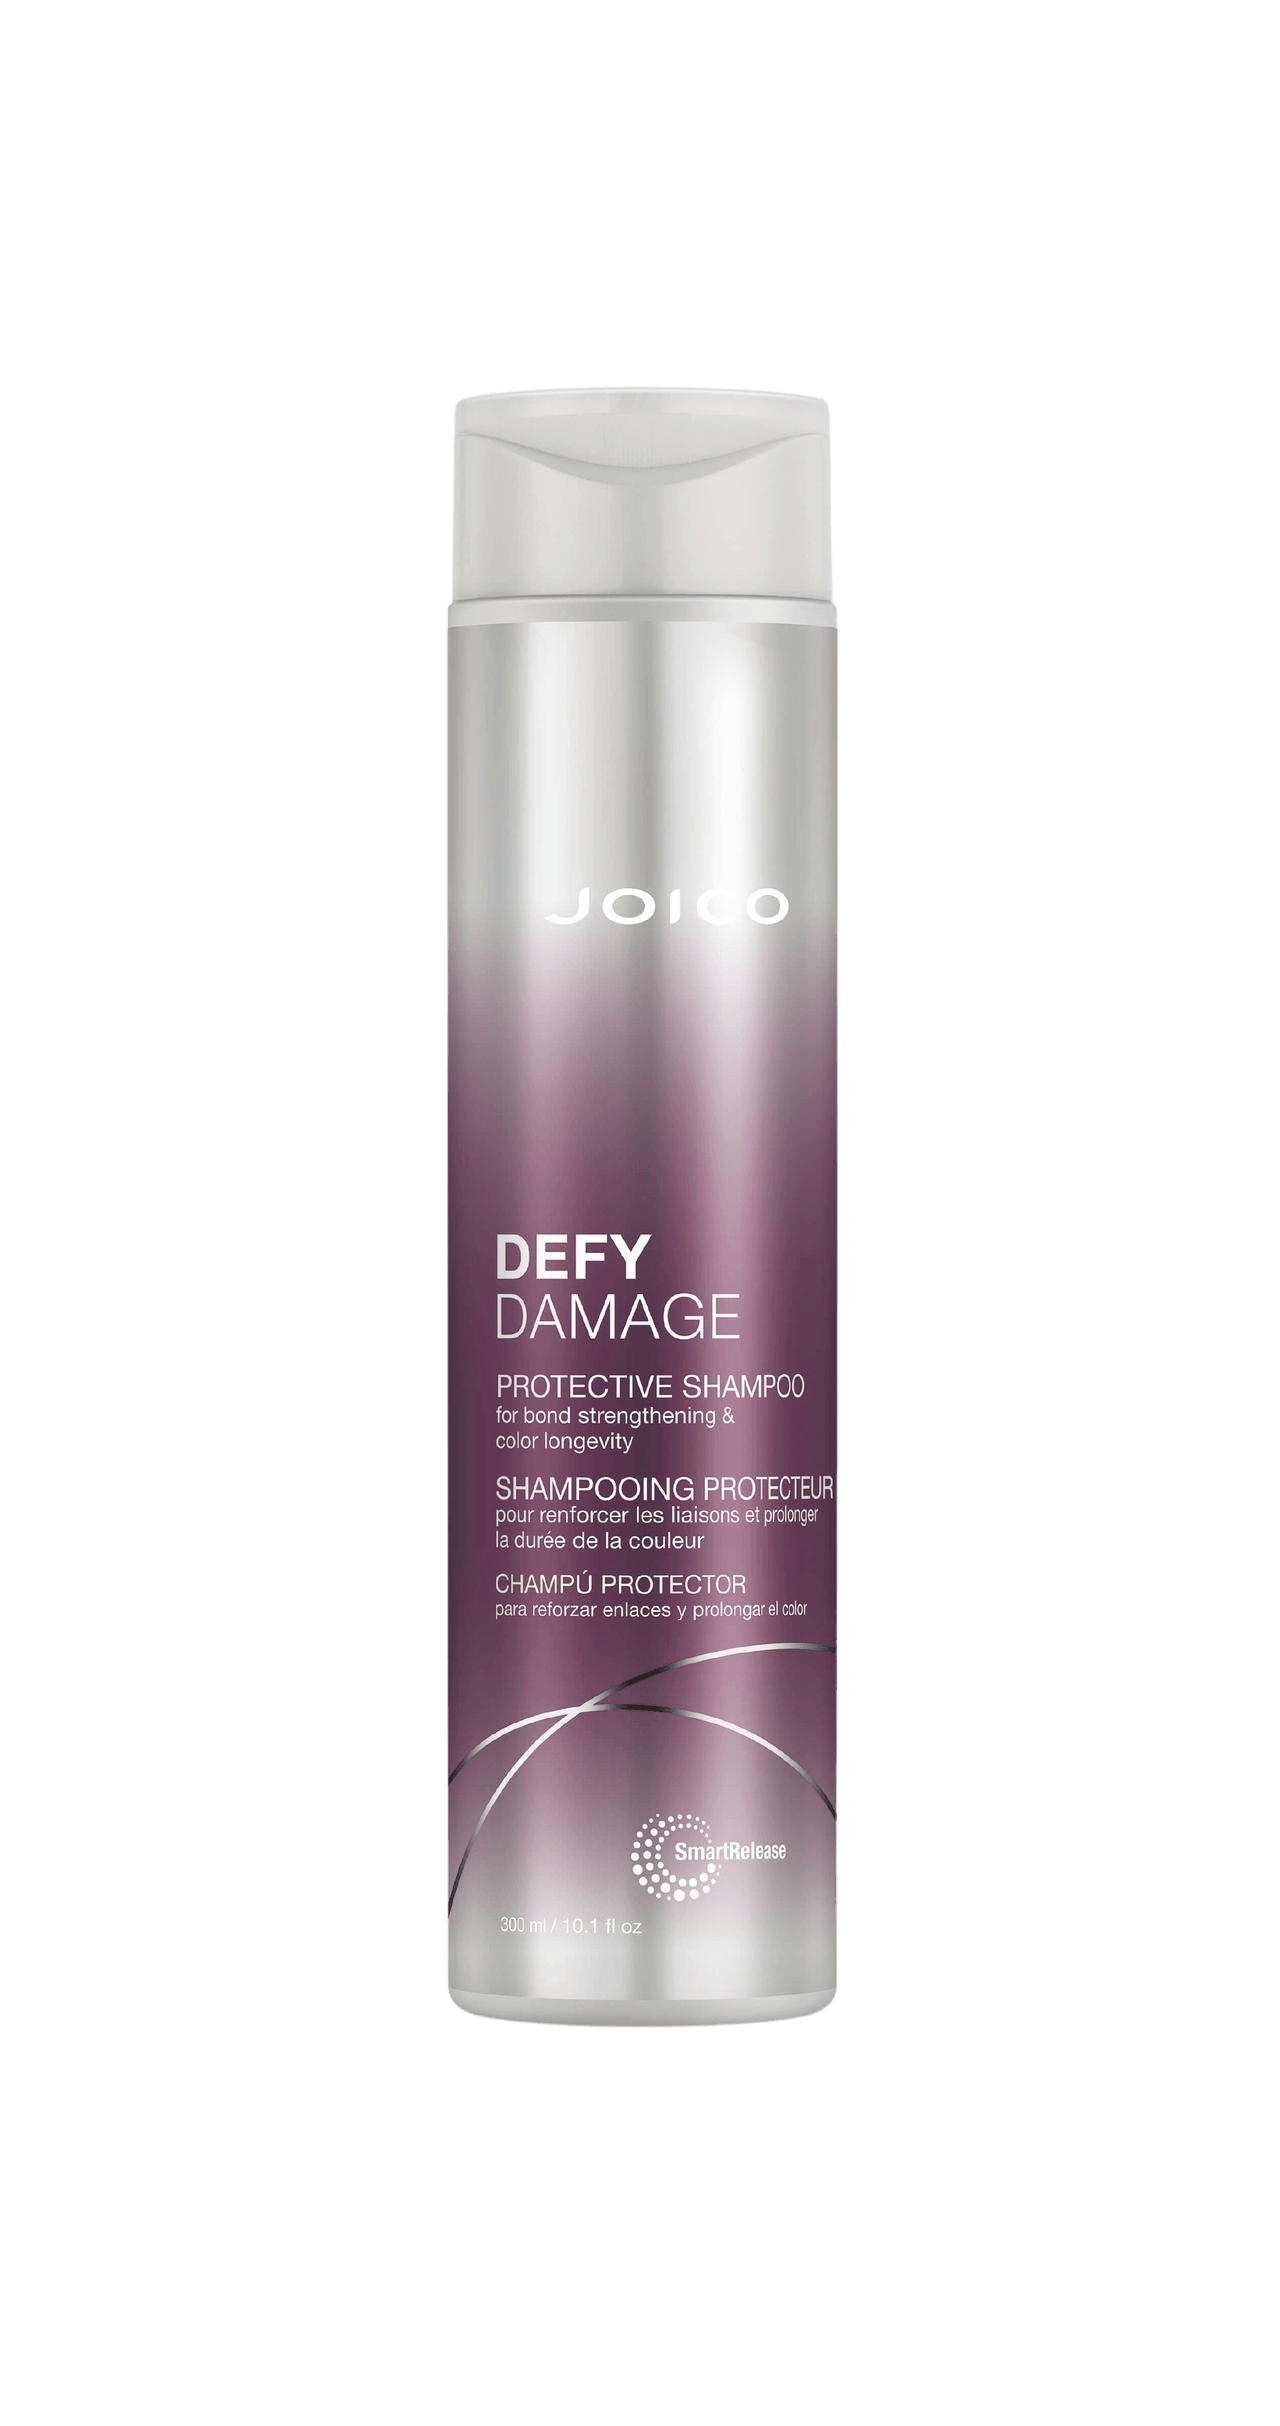 Joico Defy Damage Protective Shampoo 300mL Bottle